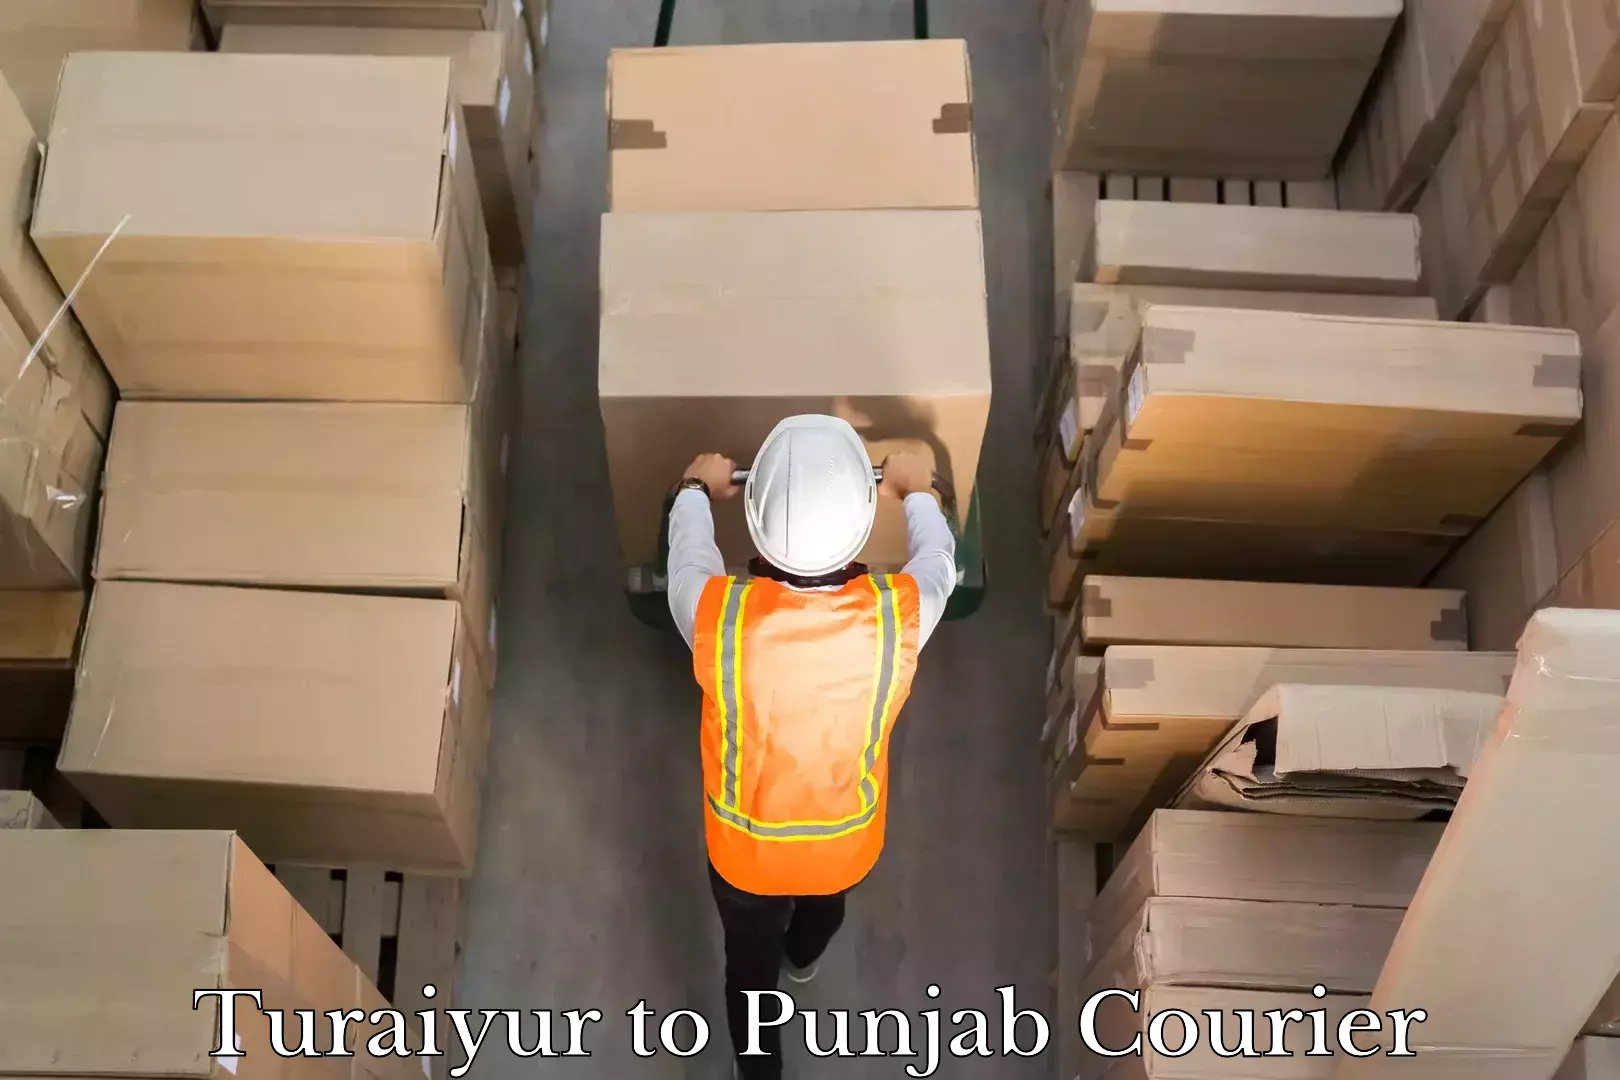 Seamless shipping service Turaiyur to Punjab